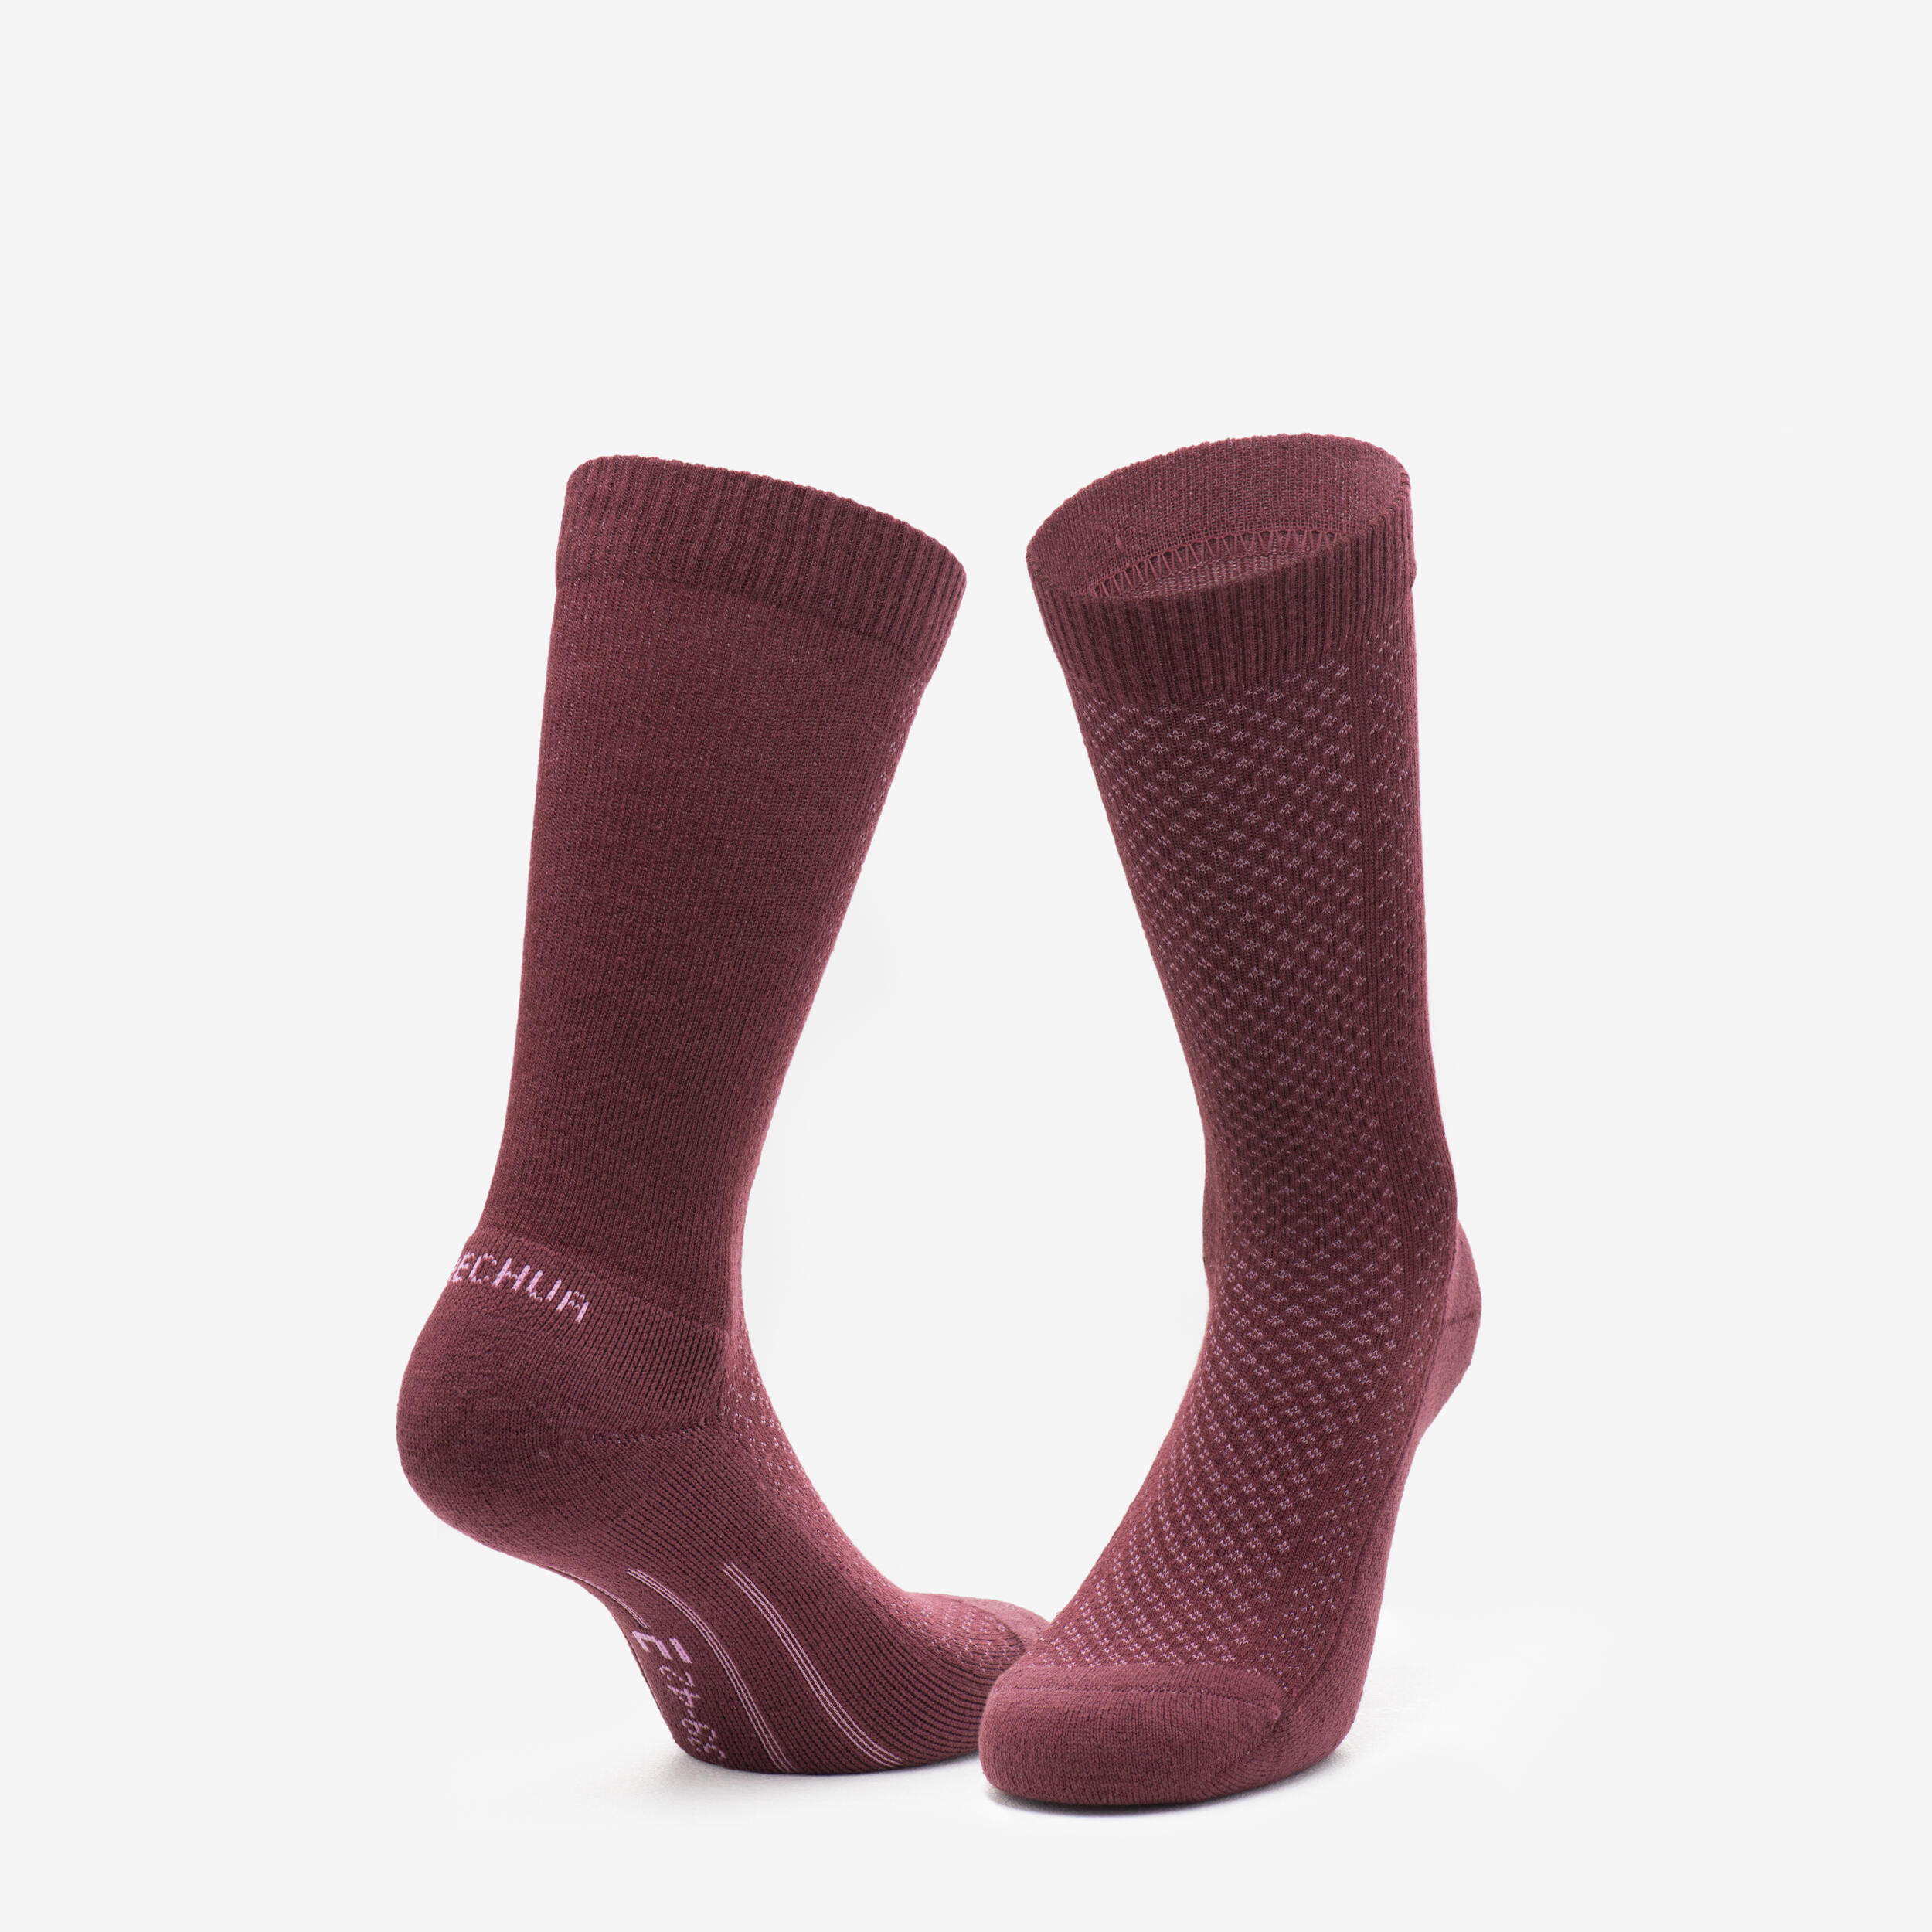 Hike 100 High Socks  - Beige Burgundy-Lyocell& Linen-Pack of 2 pairs 4/11